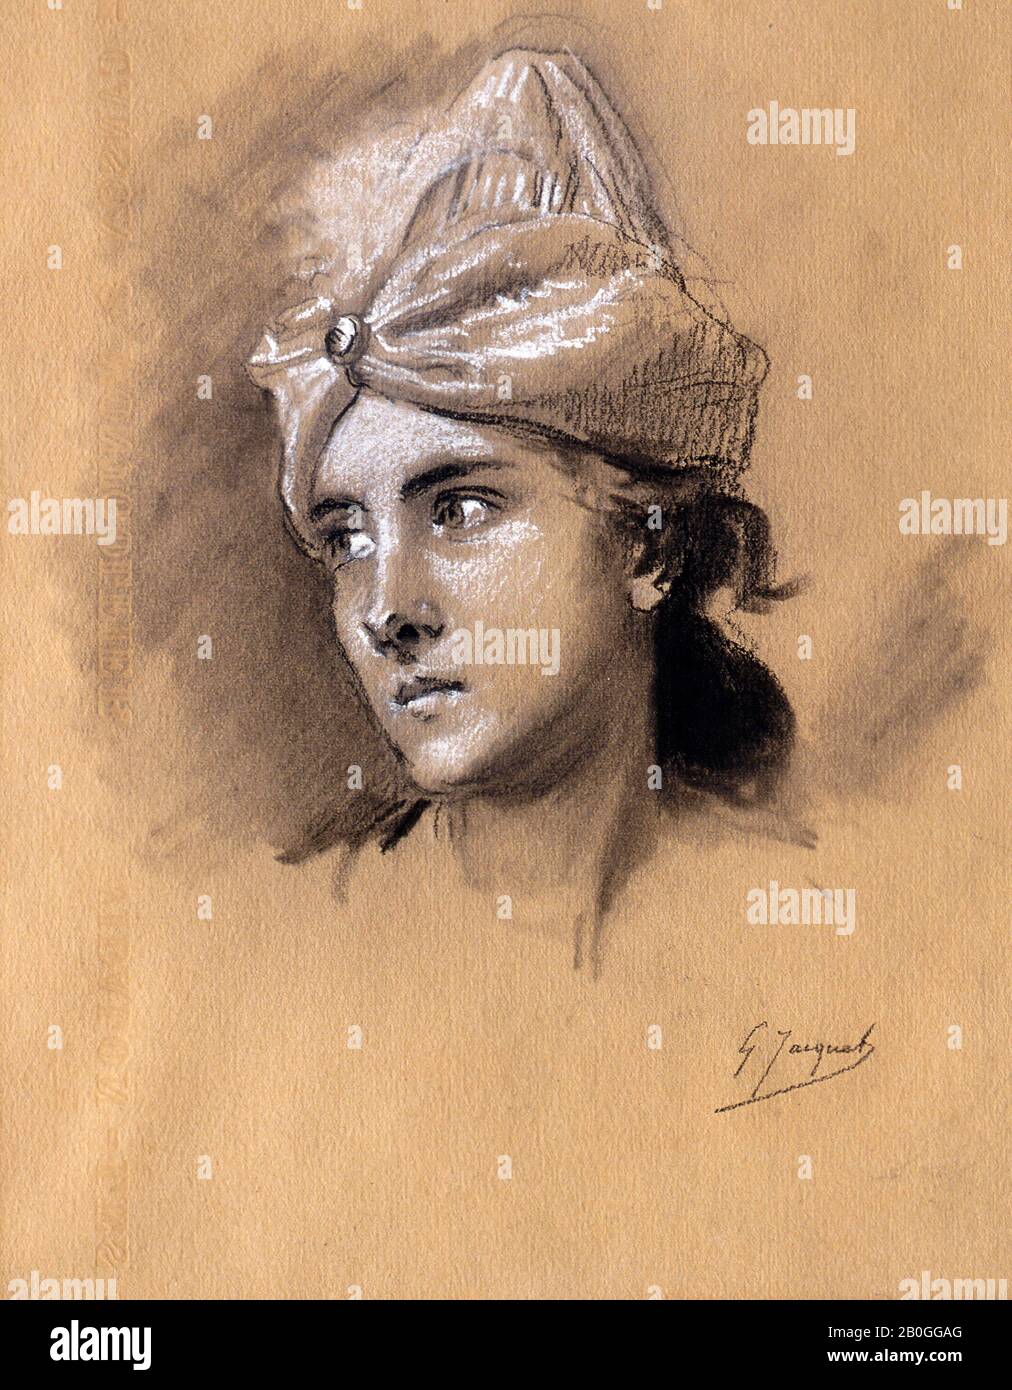 Gustave Jean Jacquet, francese, 1846-1909, Capo di una donna con un cappello A Forma di Turban, 1856-1909, gesso bianco e nero su carta, Totale: 11 1/4 x 8 7/16 in. (28,5 x 21,5 cm Foto Stock